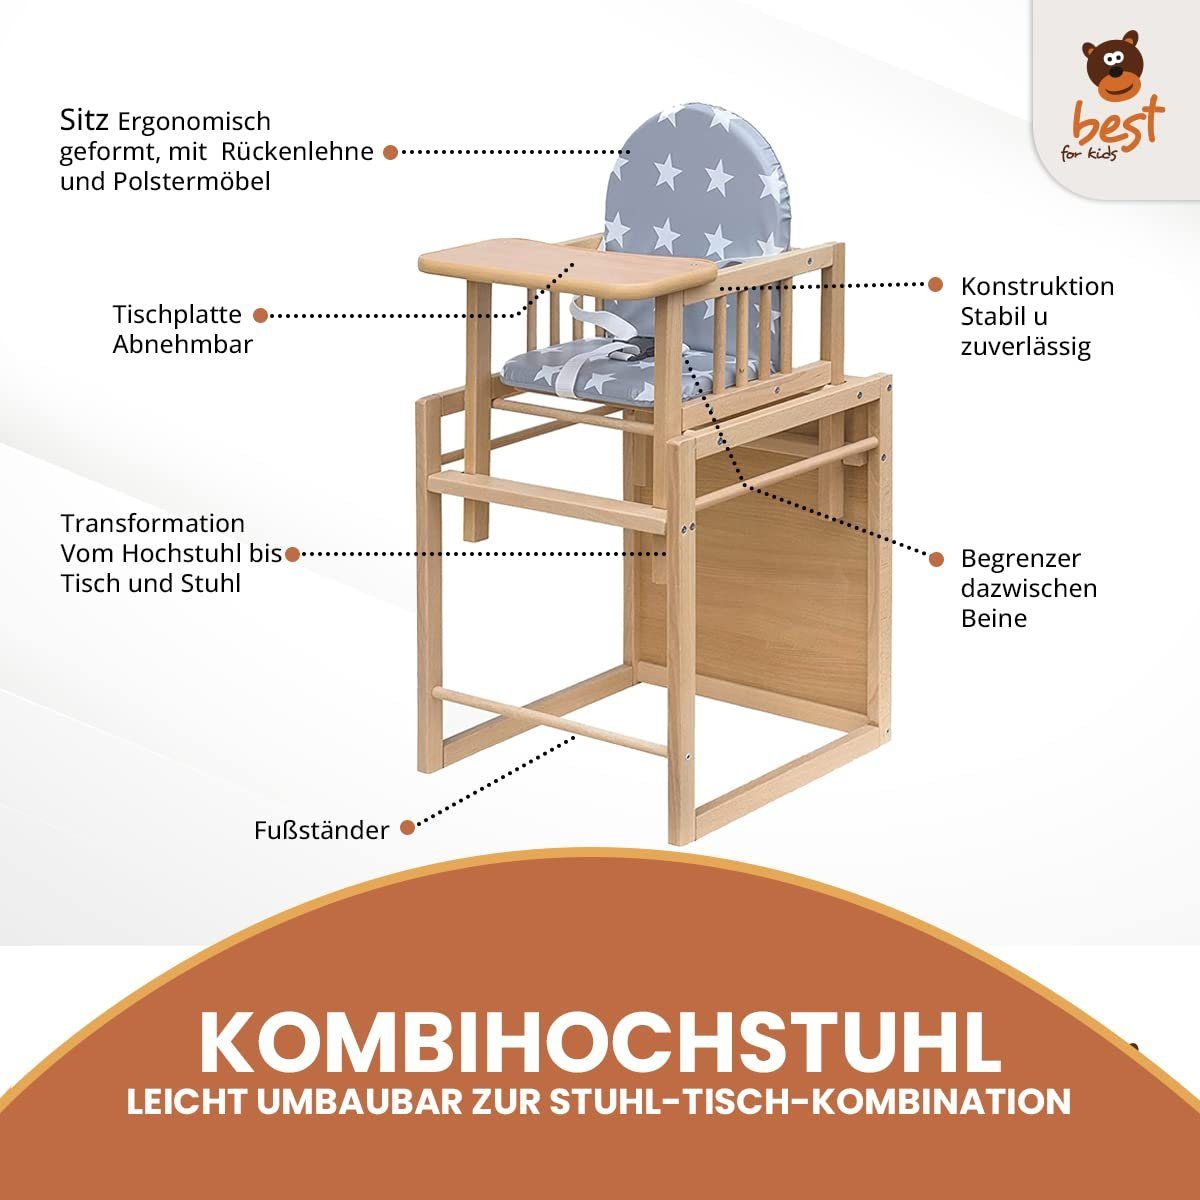 Best for Kids Kombihochstuhl Victoria, zur umbaubar leicht Stuhl-Tisch-Kombination